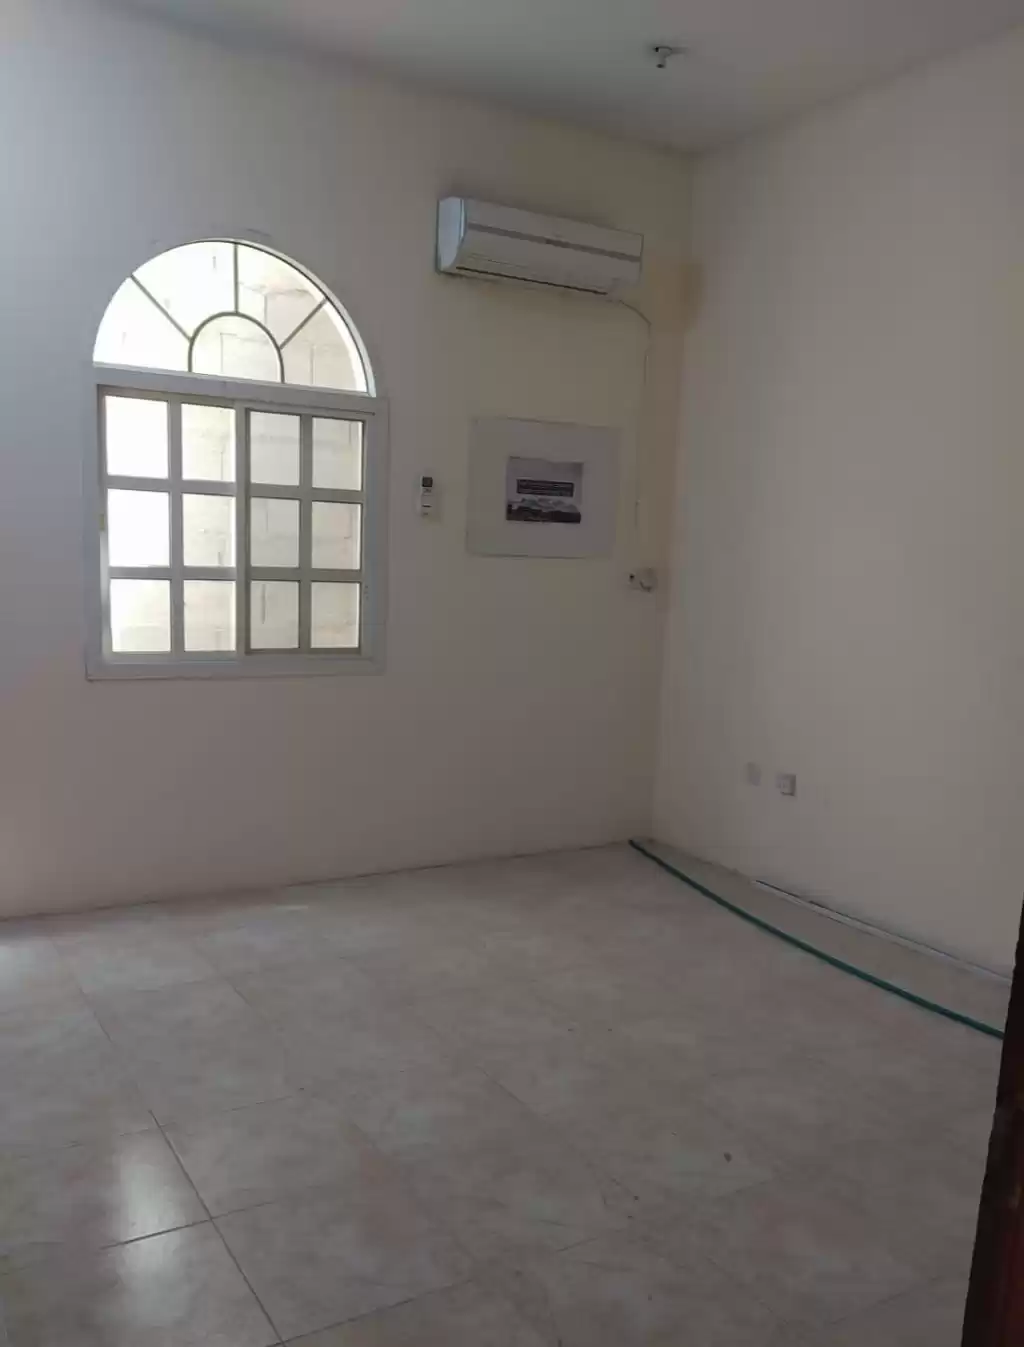 Résidentiel Propriété prête Studio U / f Appartement  a louer au Doha #18000 - 1  image 